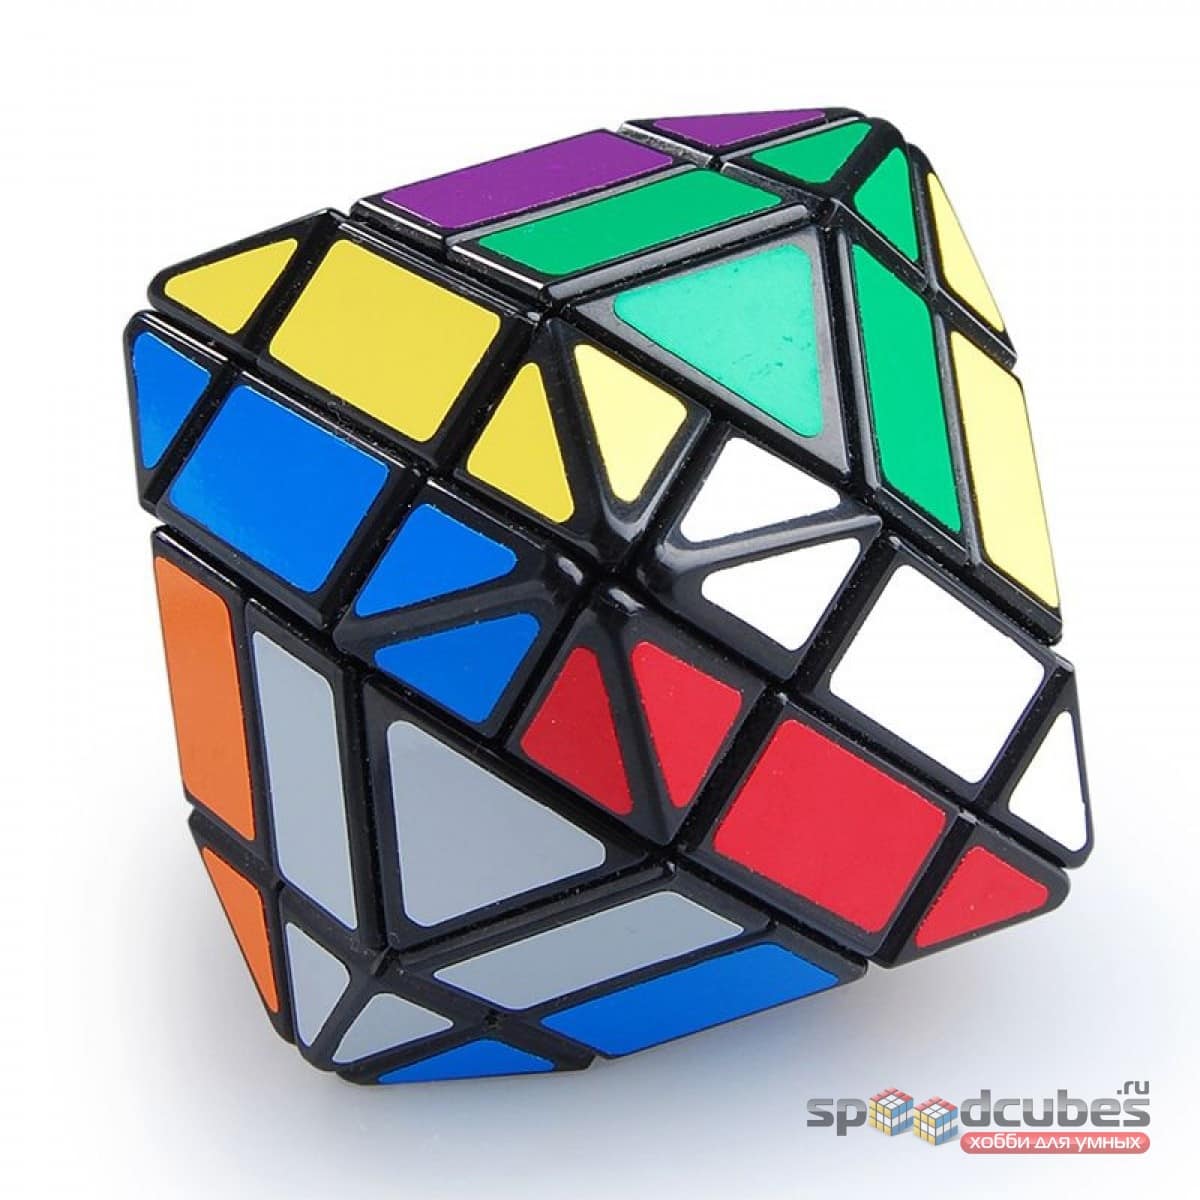 Lanlan Rhombic Dodecahedron 3